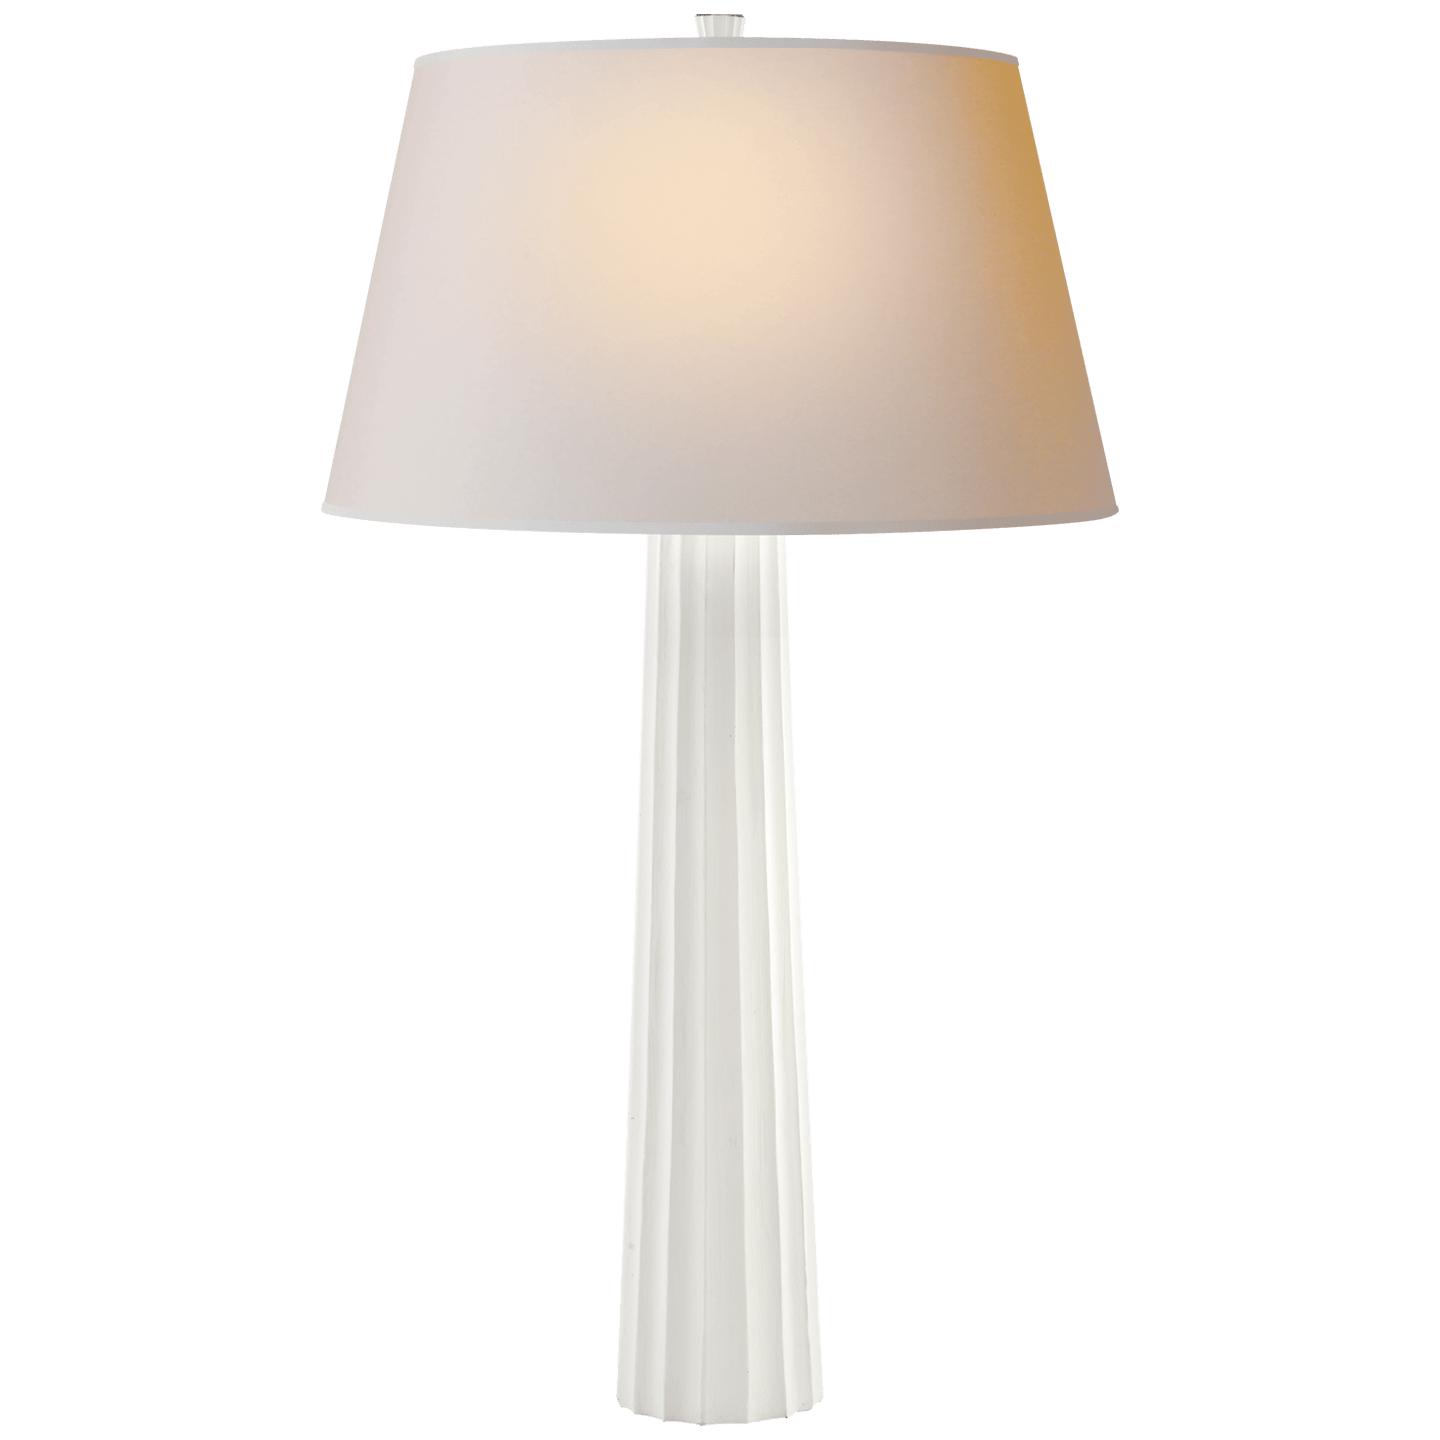 Купить Настольная лампа Fluted Spire Large Table Lamp в интернет-магазине roooms.ru